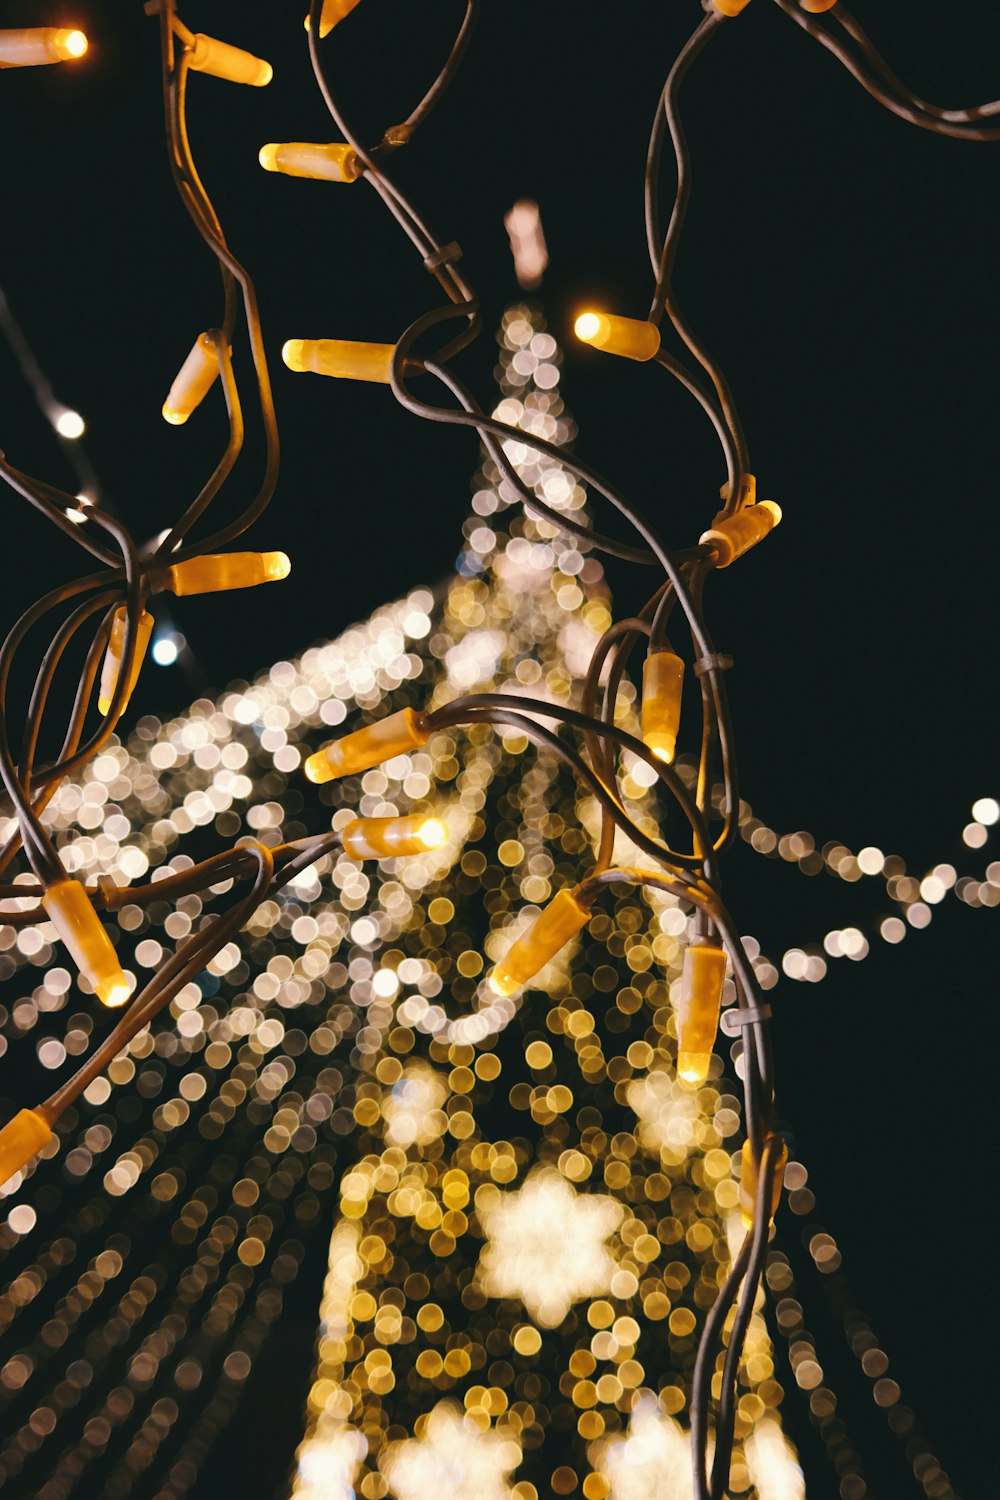 Una toma borrosa de un árbol de Navidad lleno de luces.